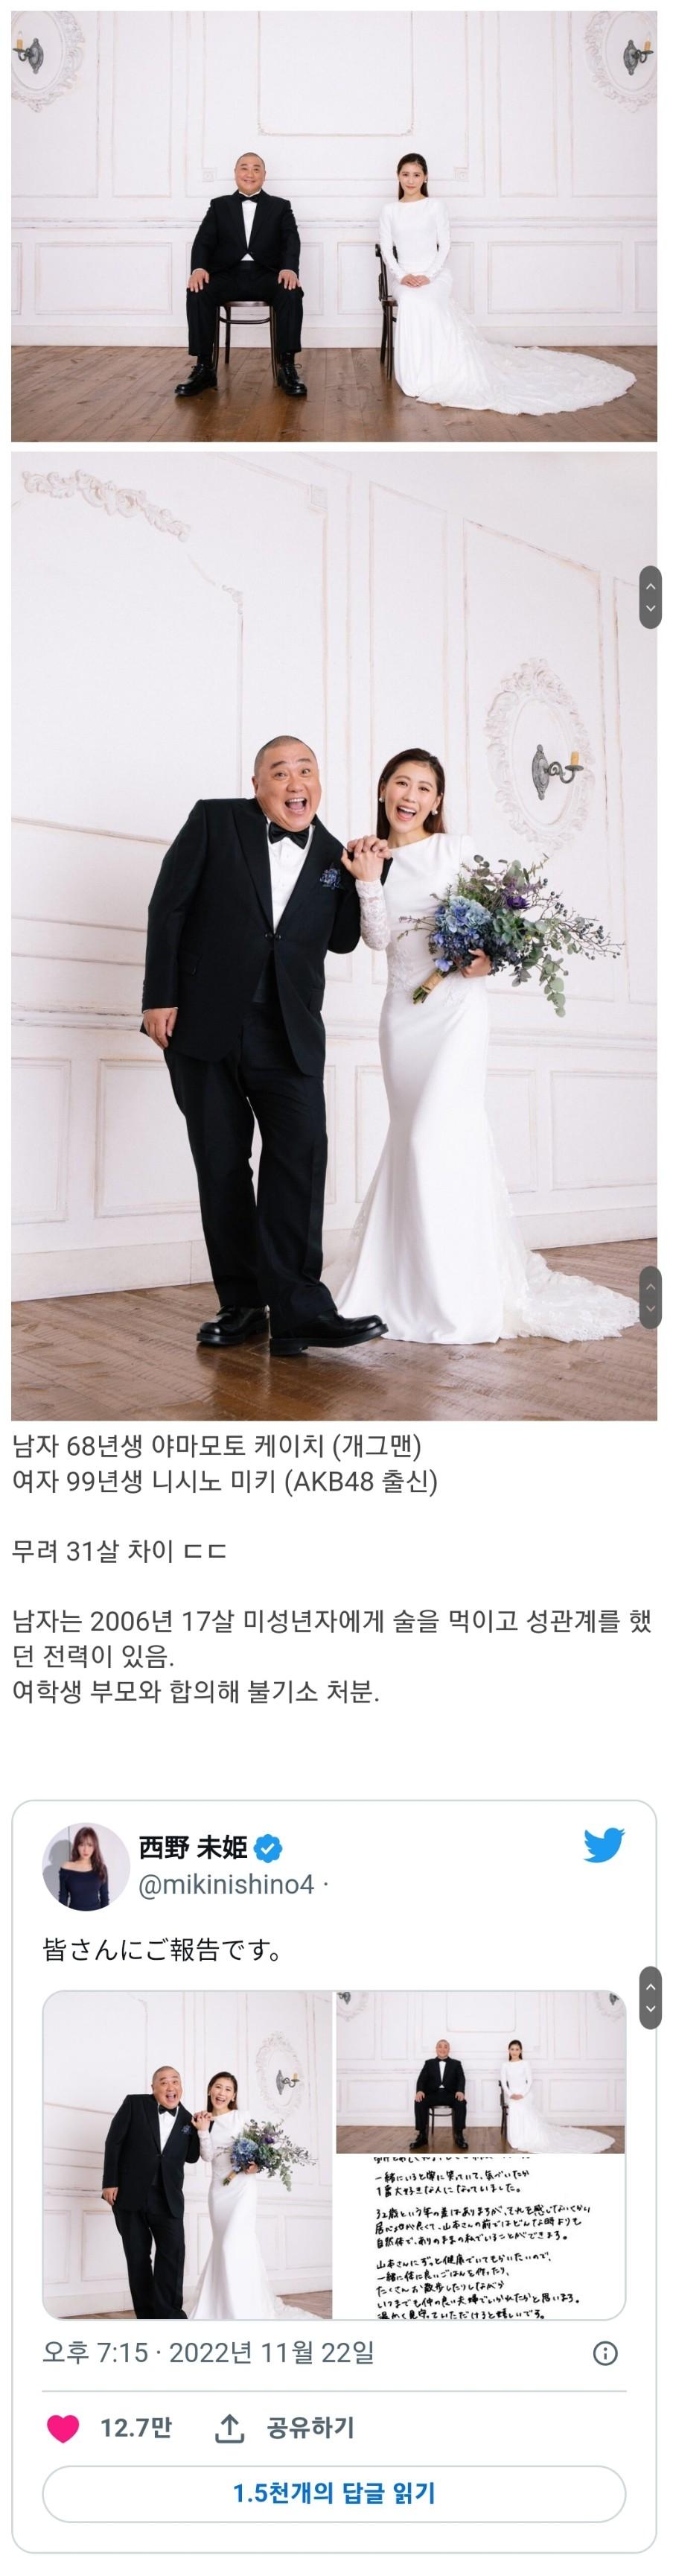 54세 개그맨과 23세 전직 아이돌 결혼